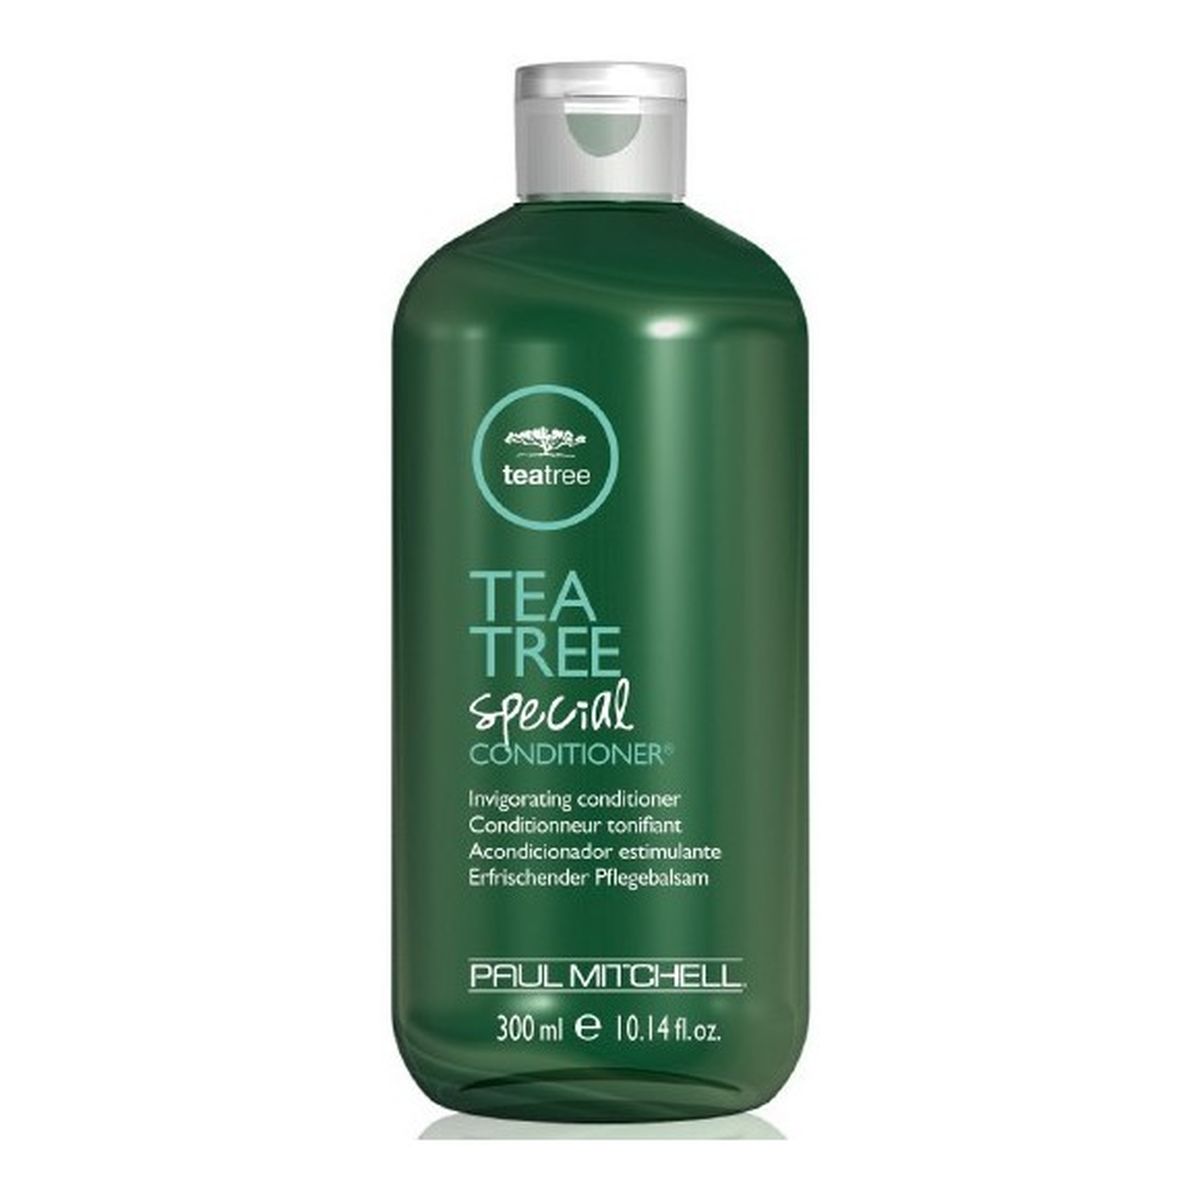 Paul Mitchell Tea Tree Special Conditioner Wzmacniająca odżywka do włosów 300ml